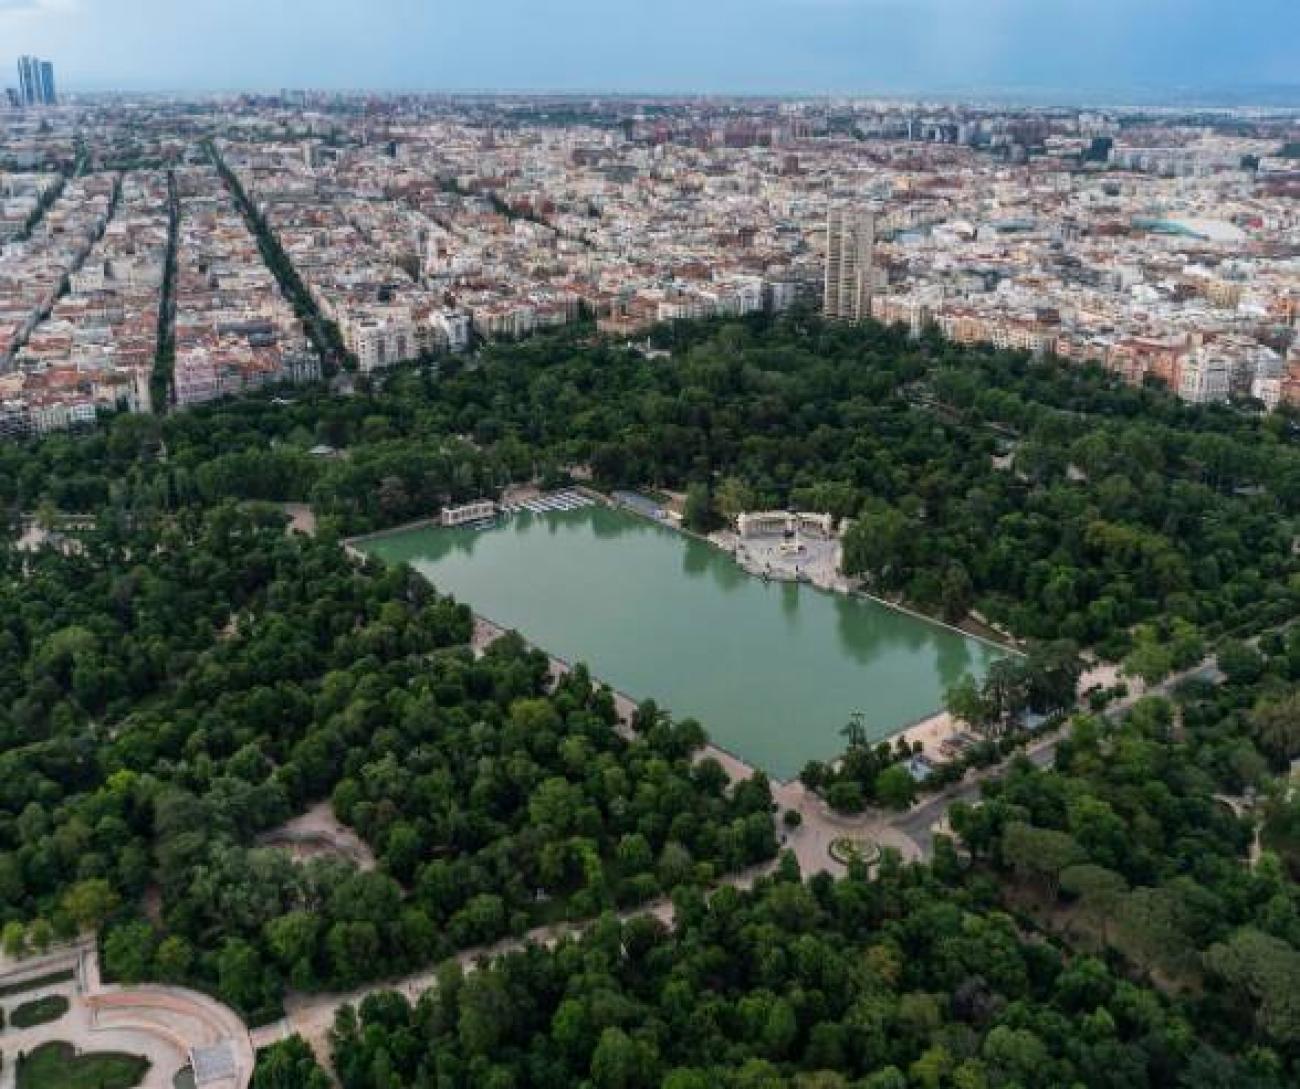 Vista aérea de Madrid con el parque de El Retiro en el centro